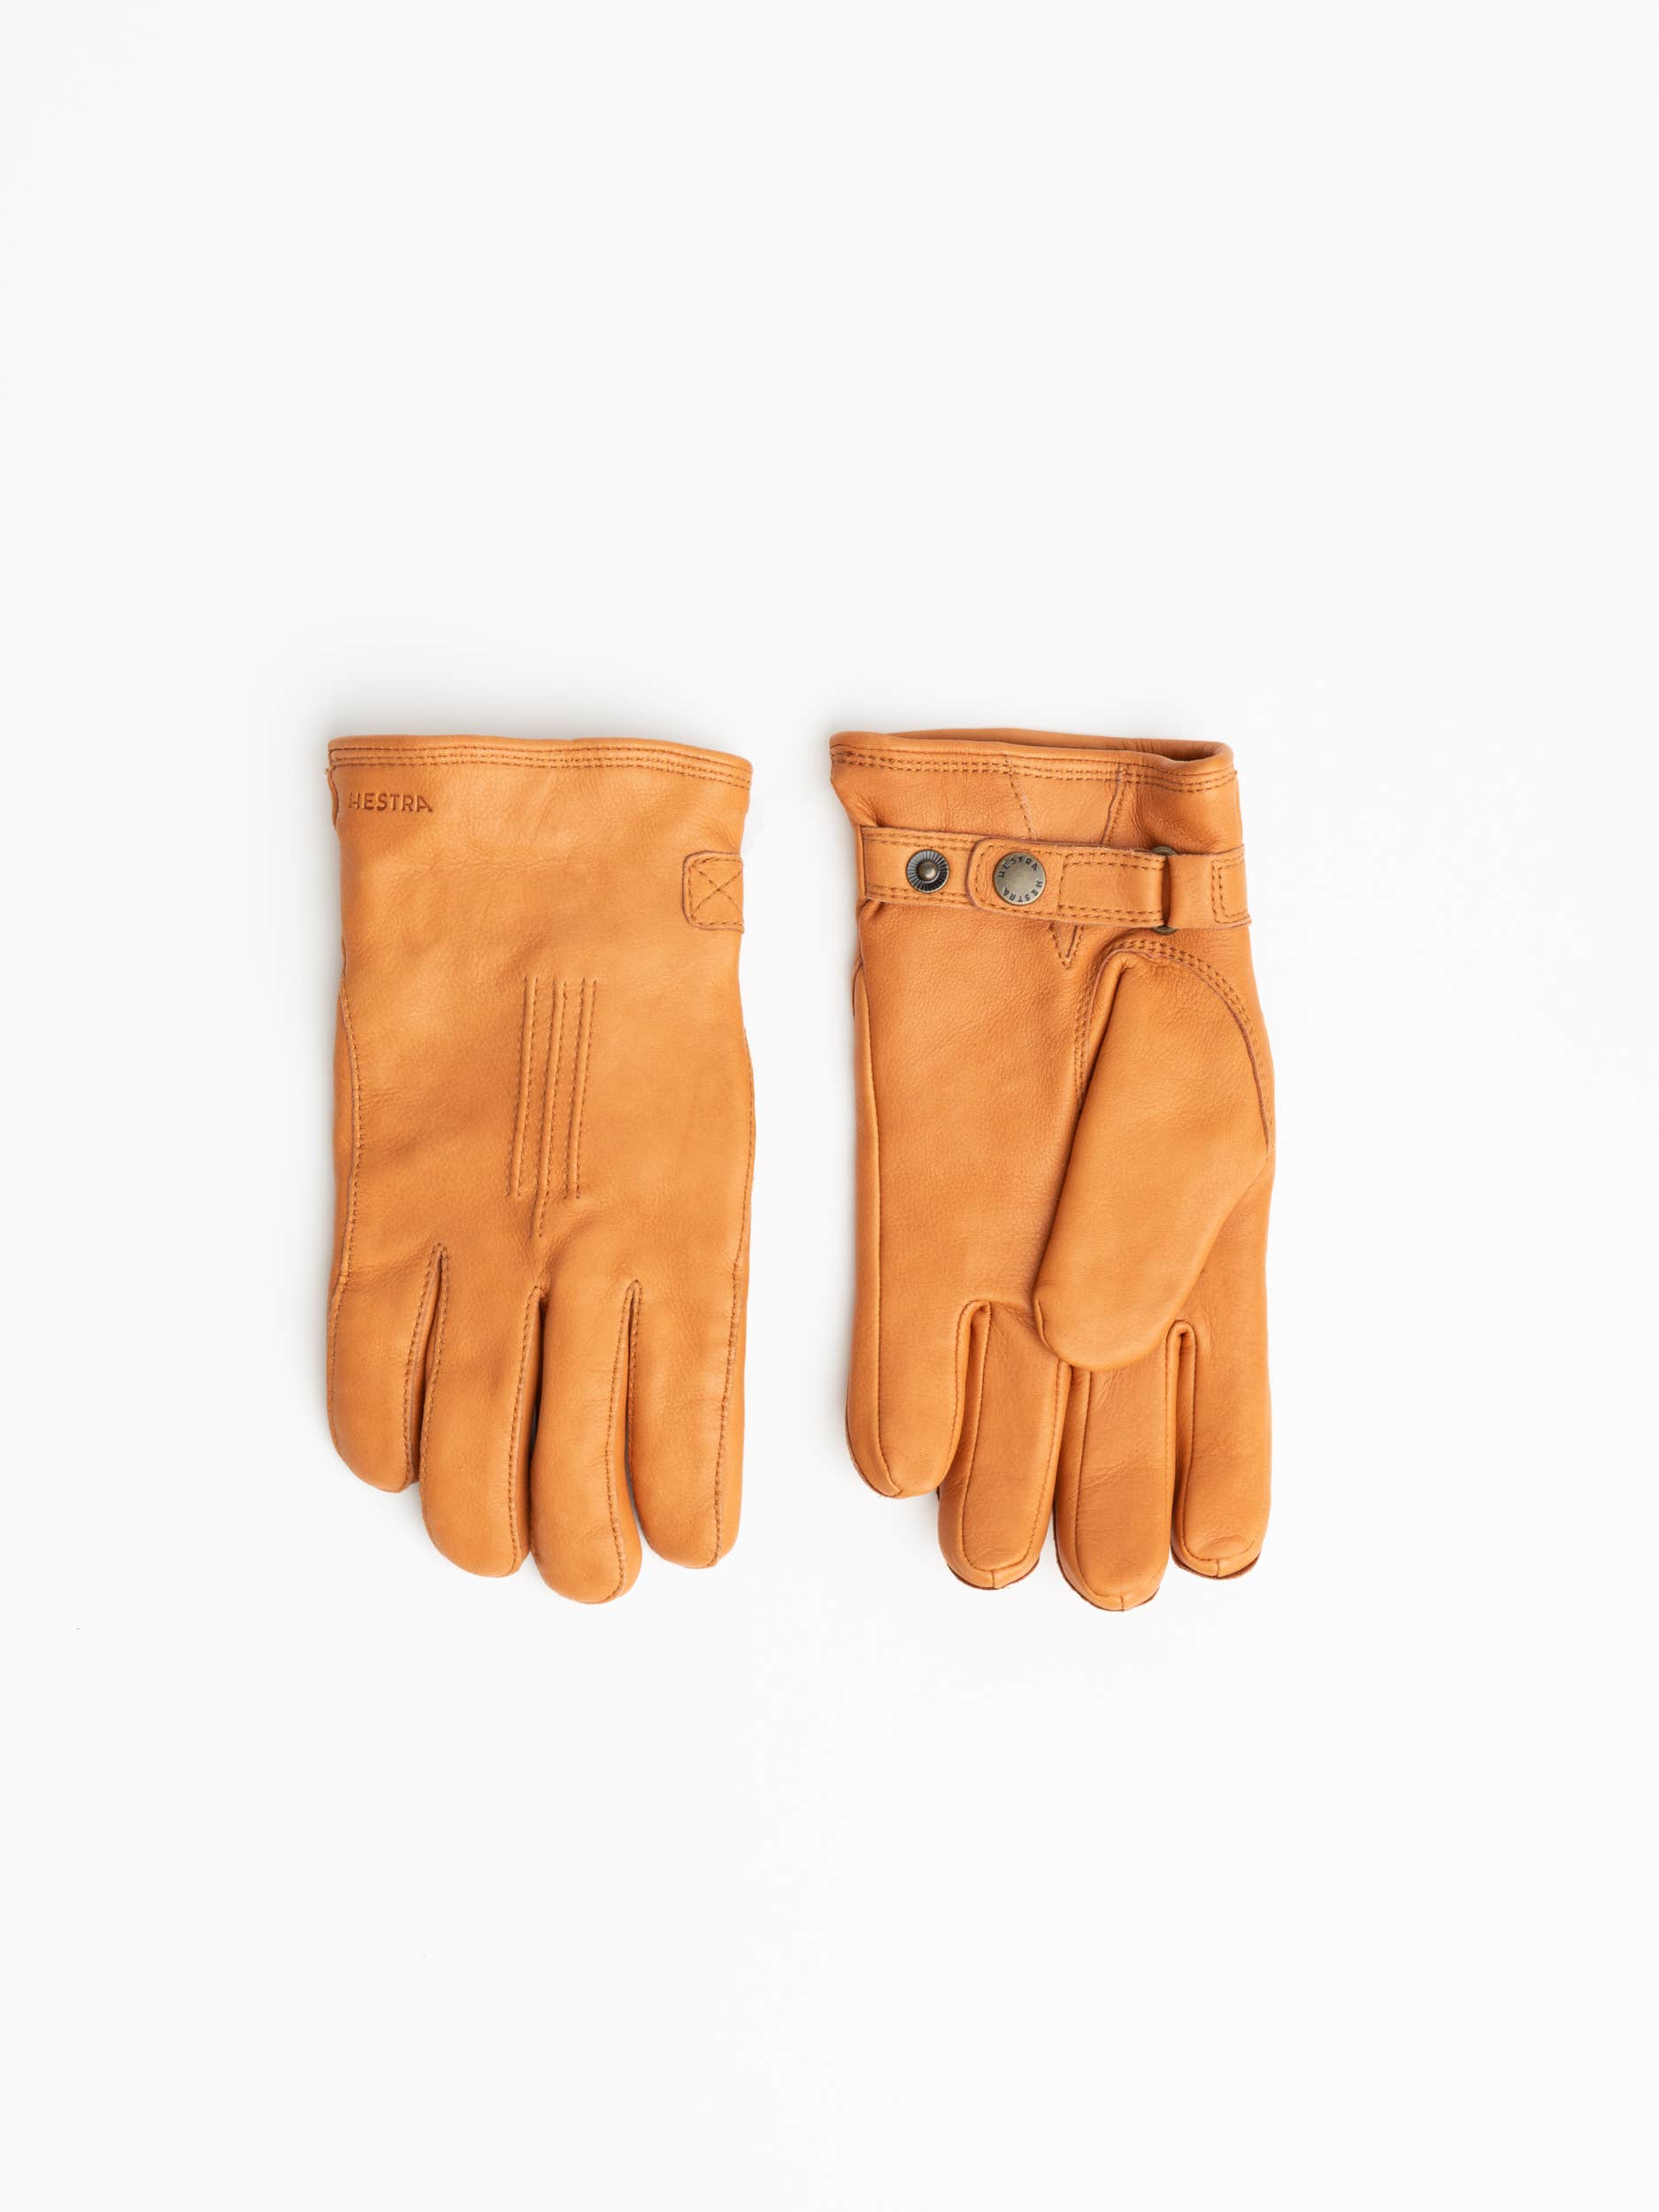 Cork Deerskin Gloves